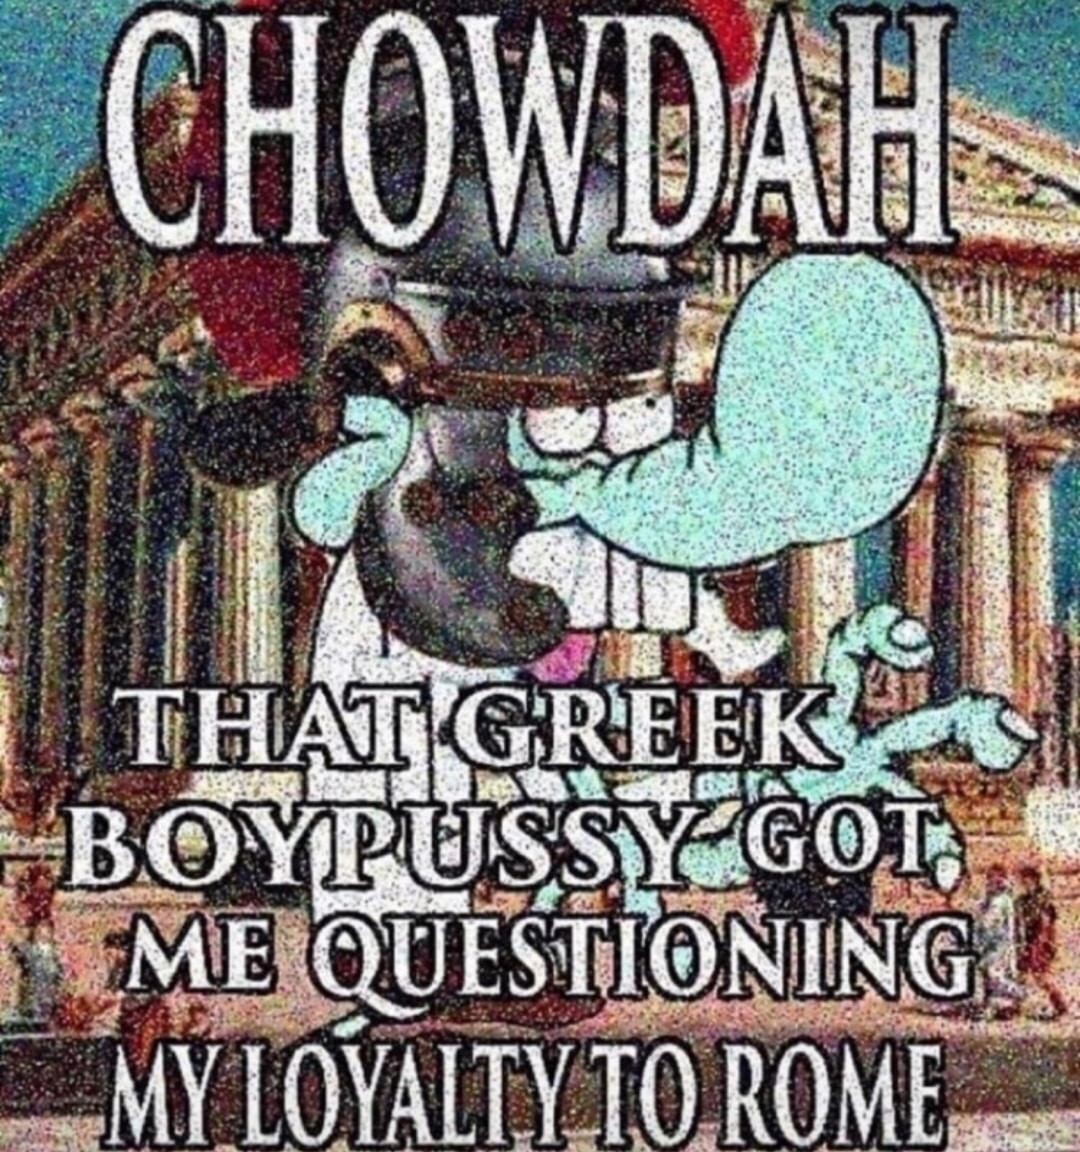 Chowder my boy - meme